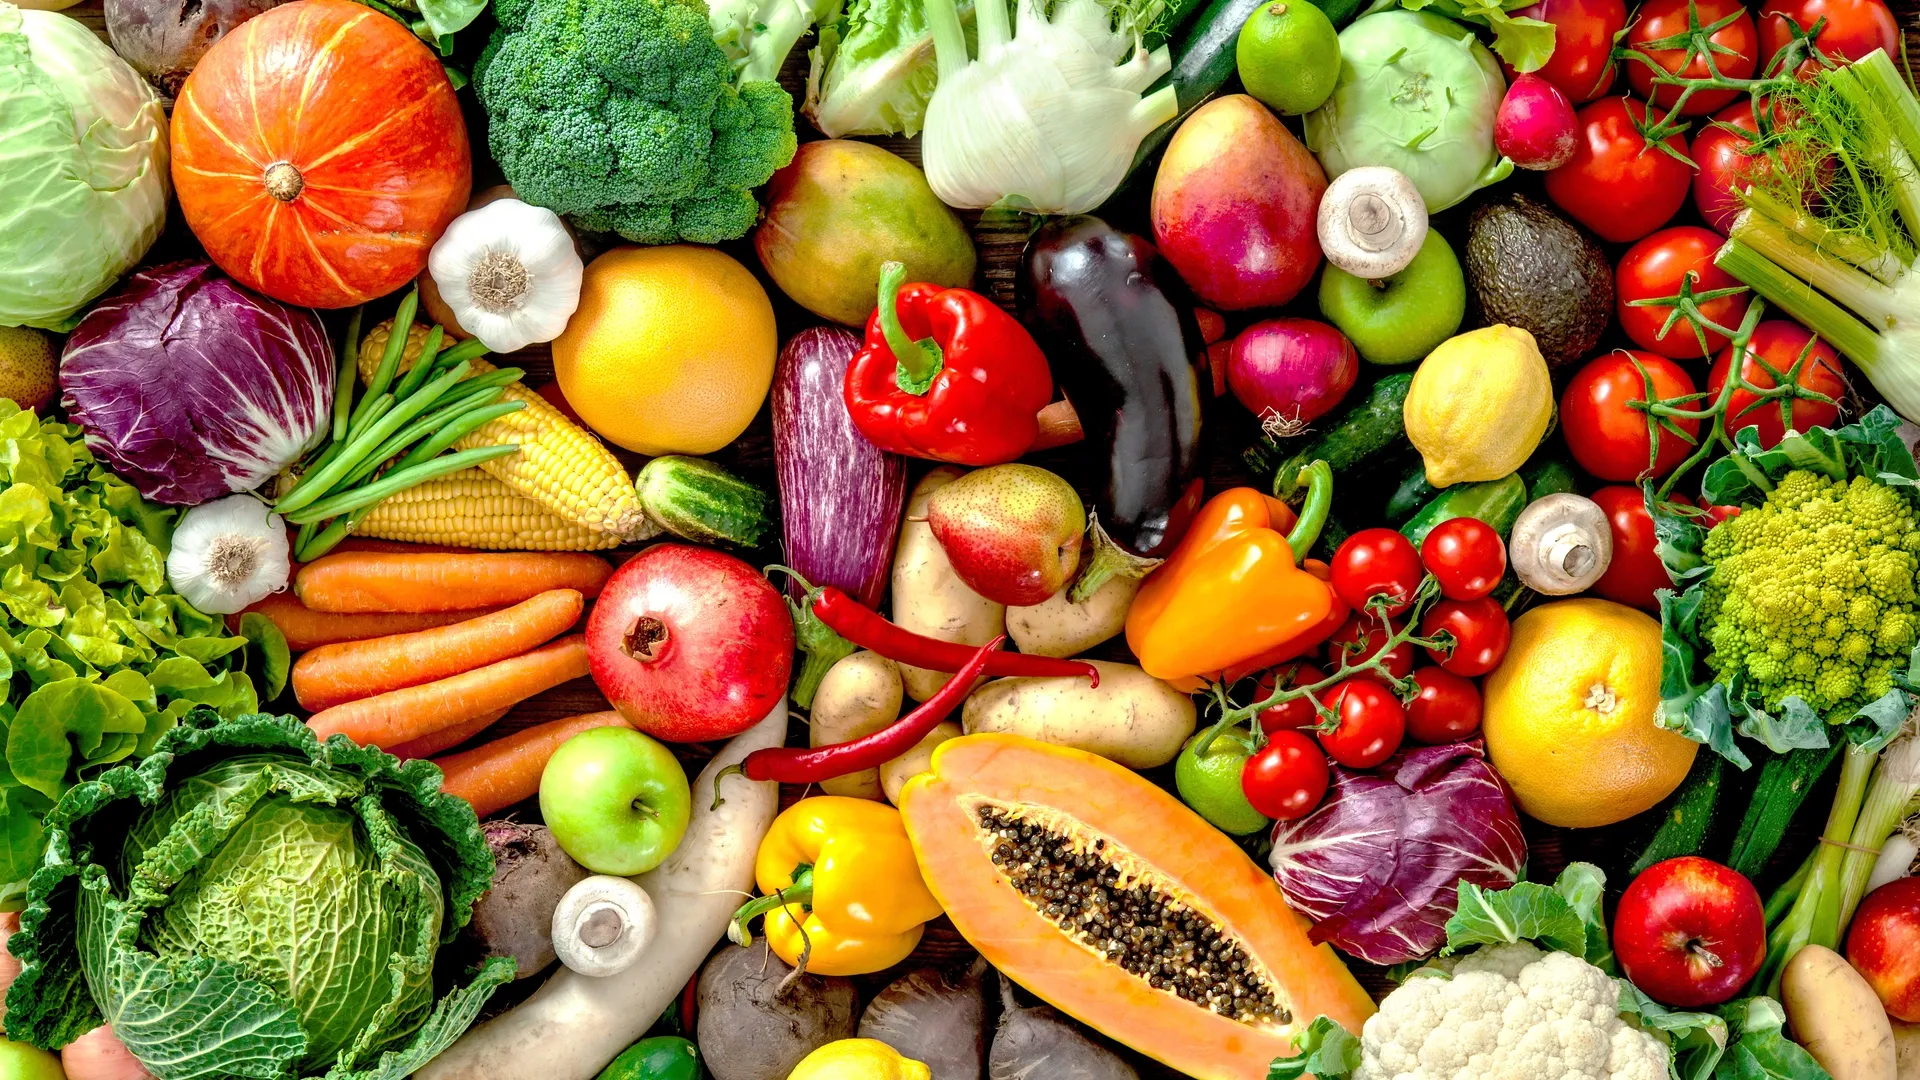 Овощи и фрукты позитивно влияют на состояние здоровья человека. Фото: Alexander Raths / Shutterstock.com